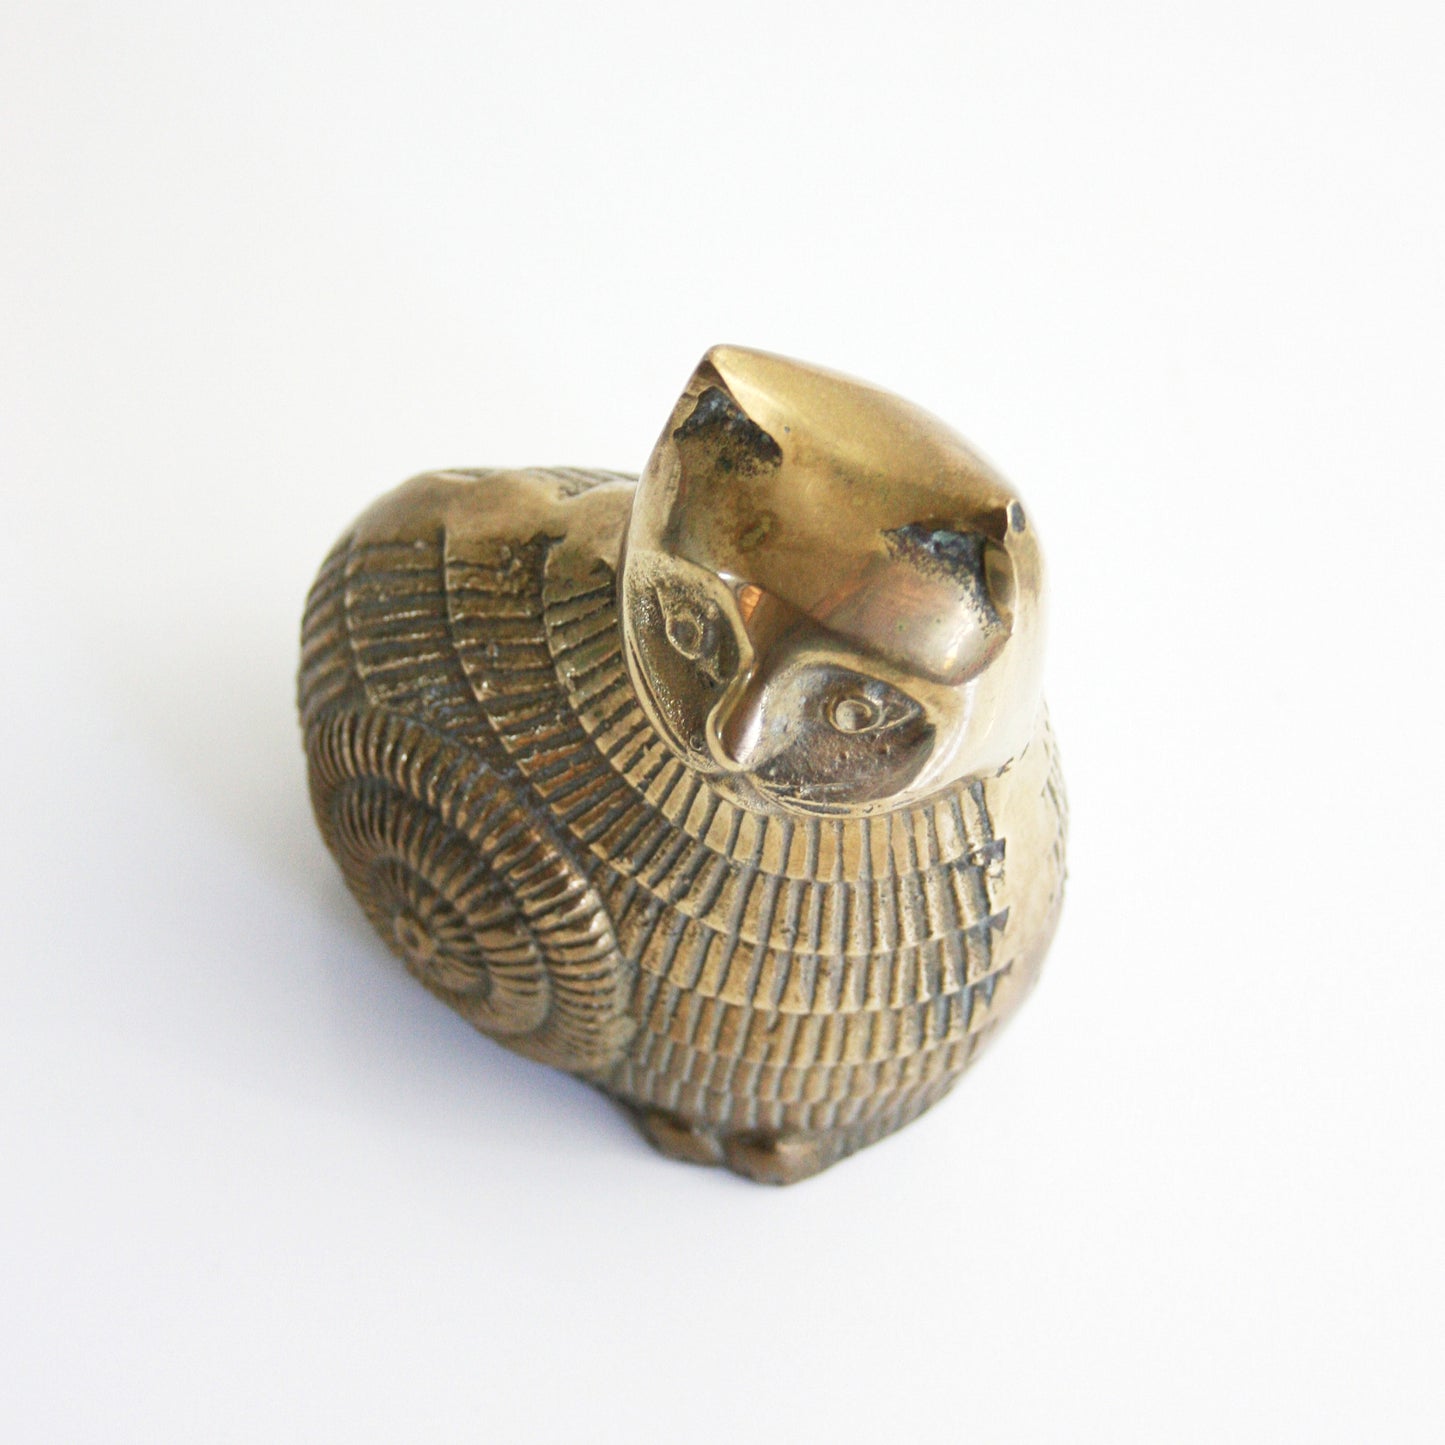 SOLD - Mid Century Modern Brass Cat / Vintage Brass Cat Figurine